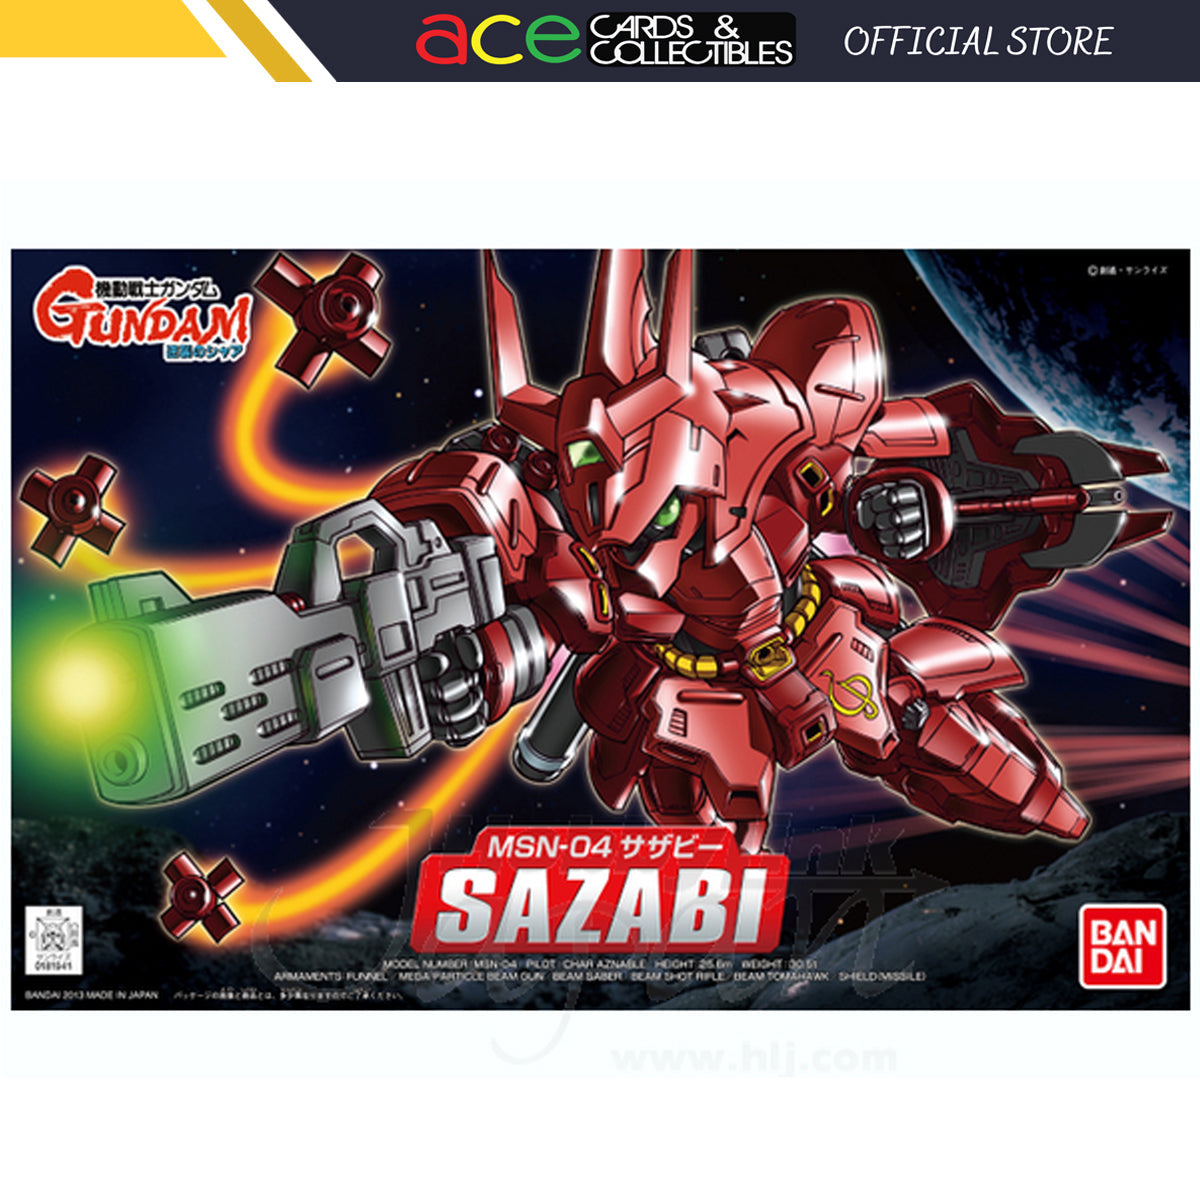 BB382 Sazabi-Bandai-Ace Cards & Collectibles